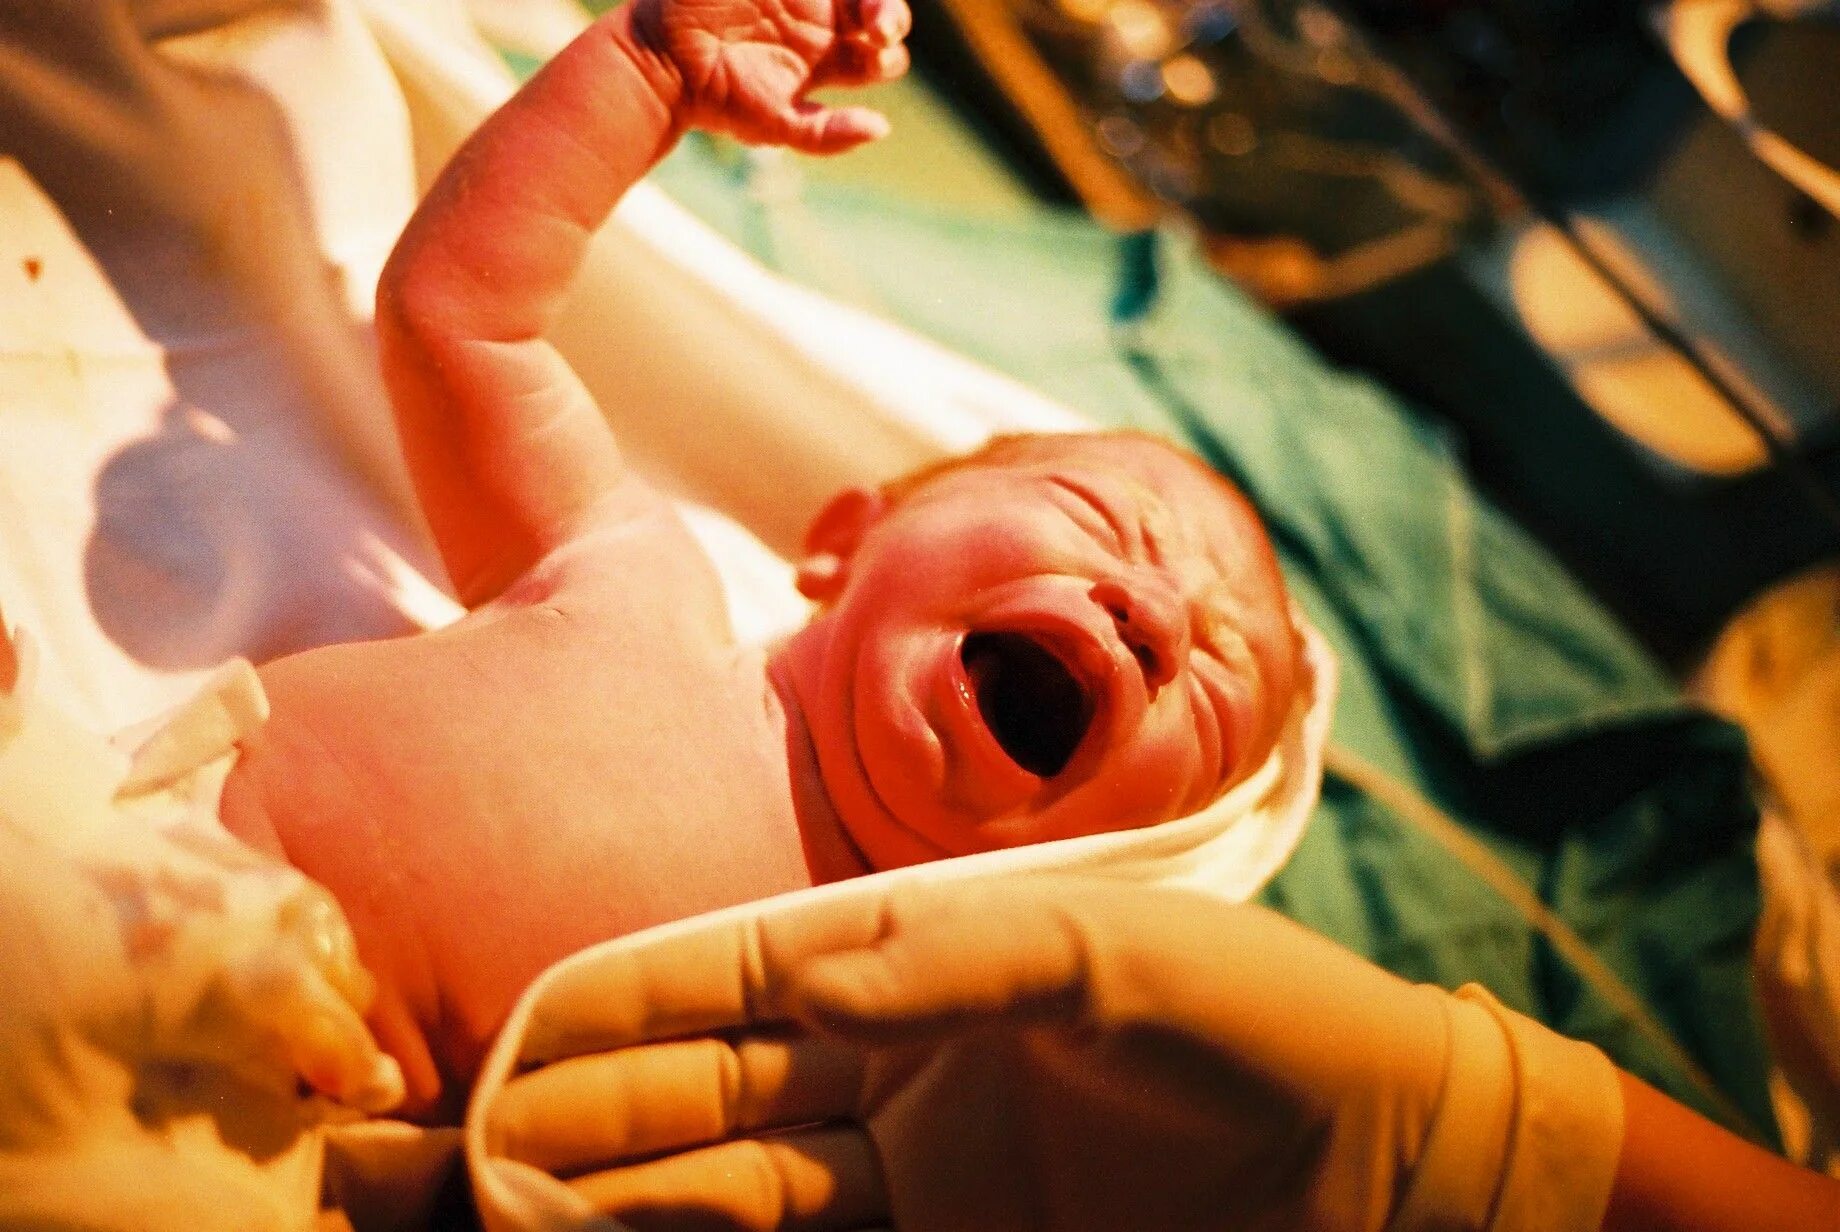 Роды детей в роддоме. Процесс рождения ребенка в роддоме. Новорожденный в родильном зале.